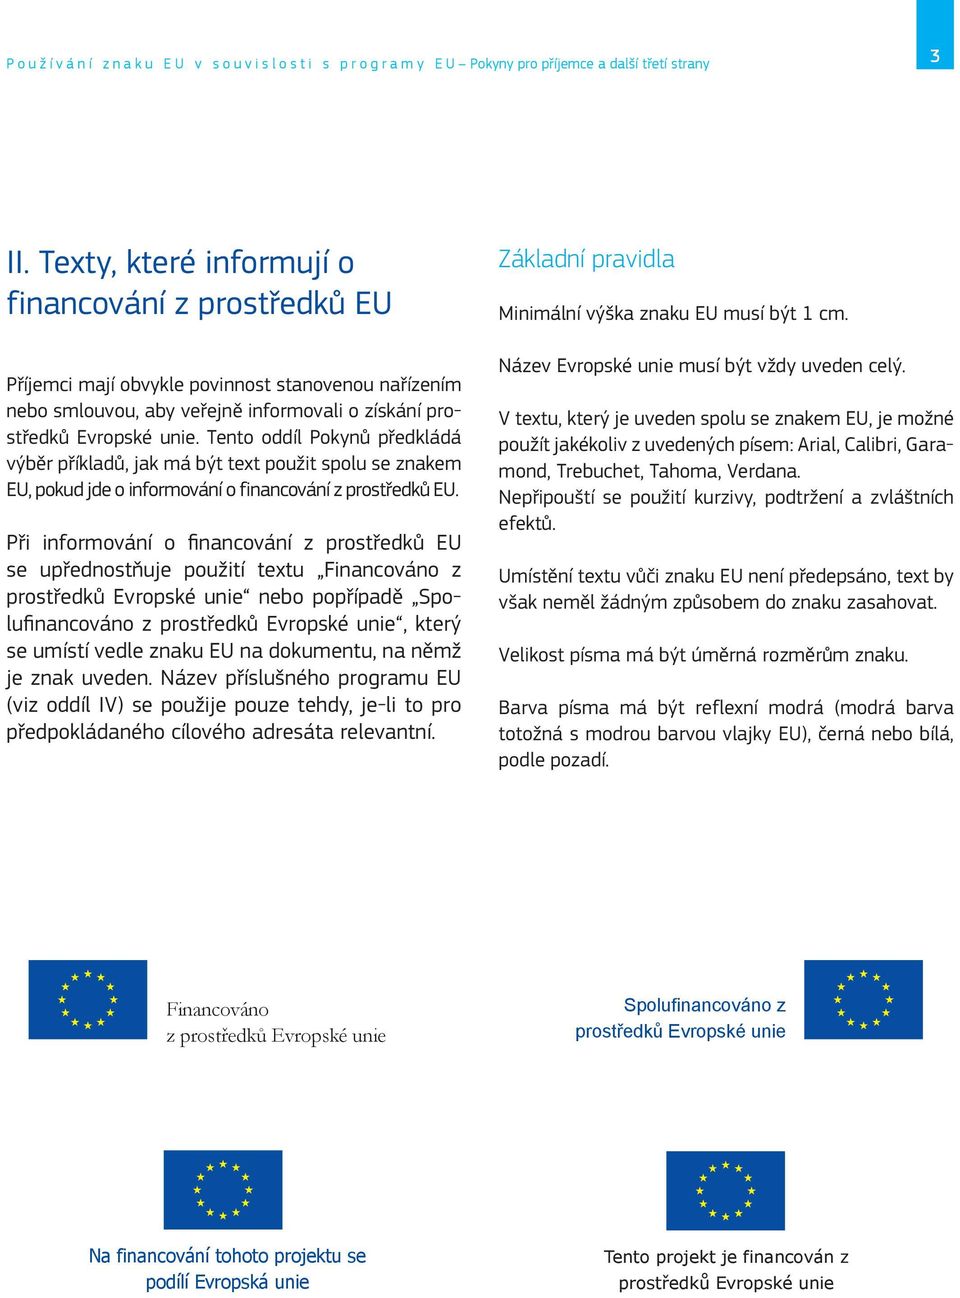 Tento oddíl Pokynů předkládá výběr příkladů, jak má být text použit spolu se znakem EU, pokud jde o informování o financování z prostředků EU.